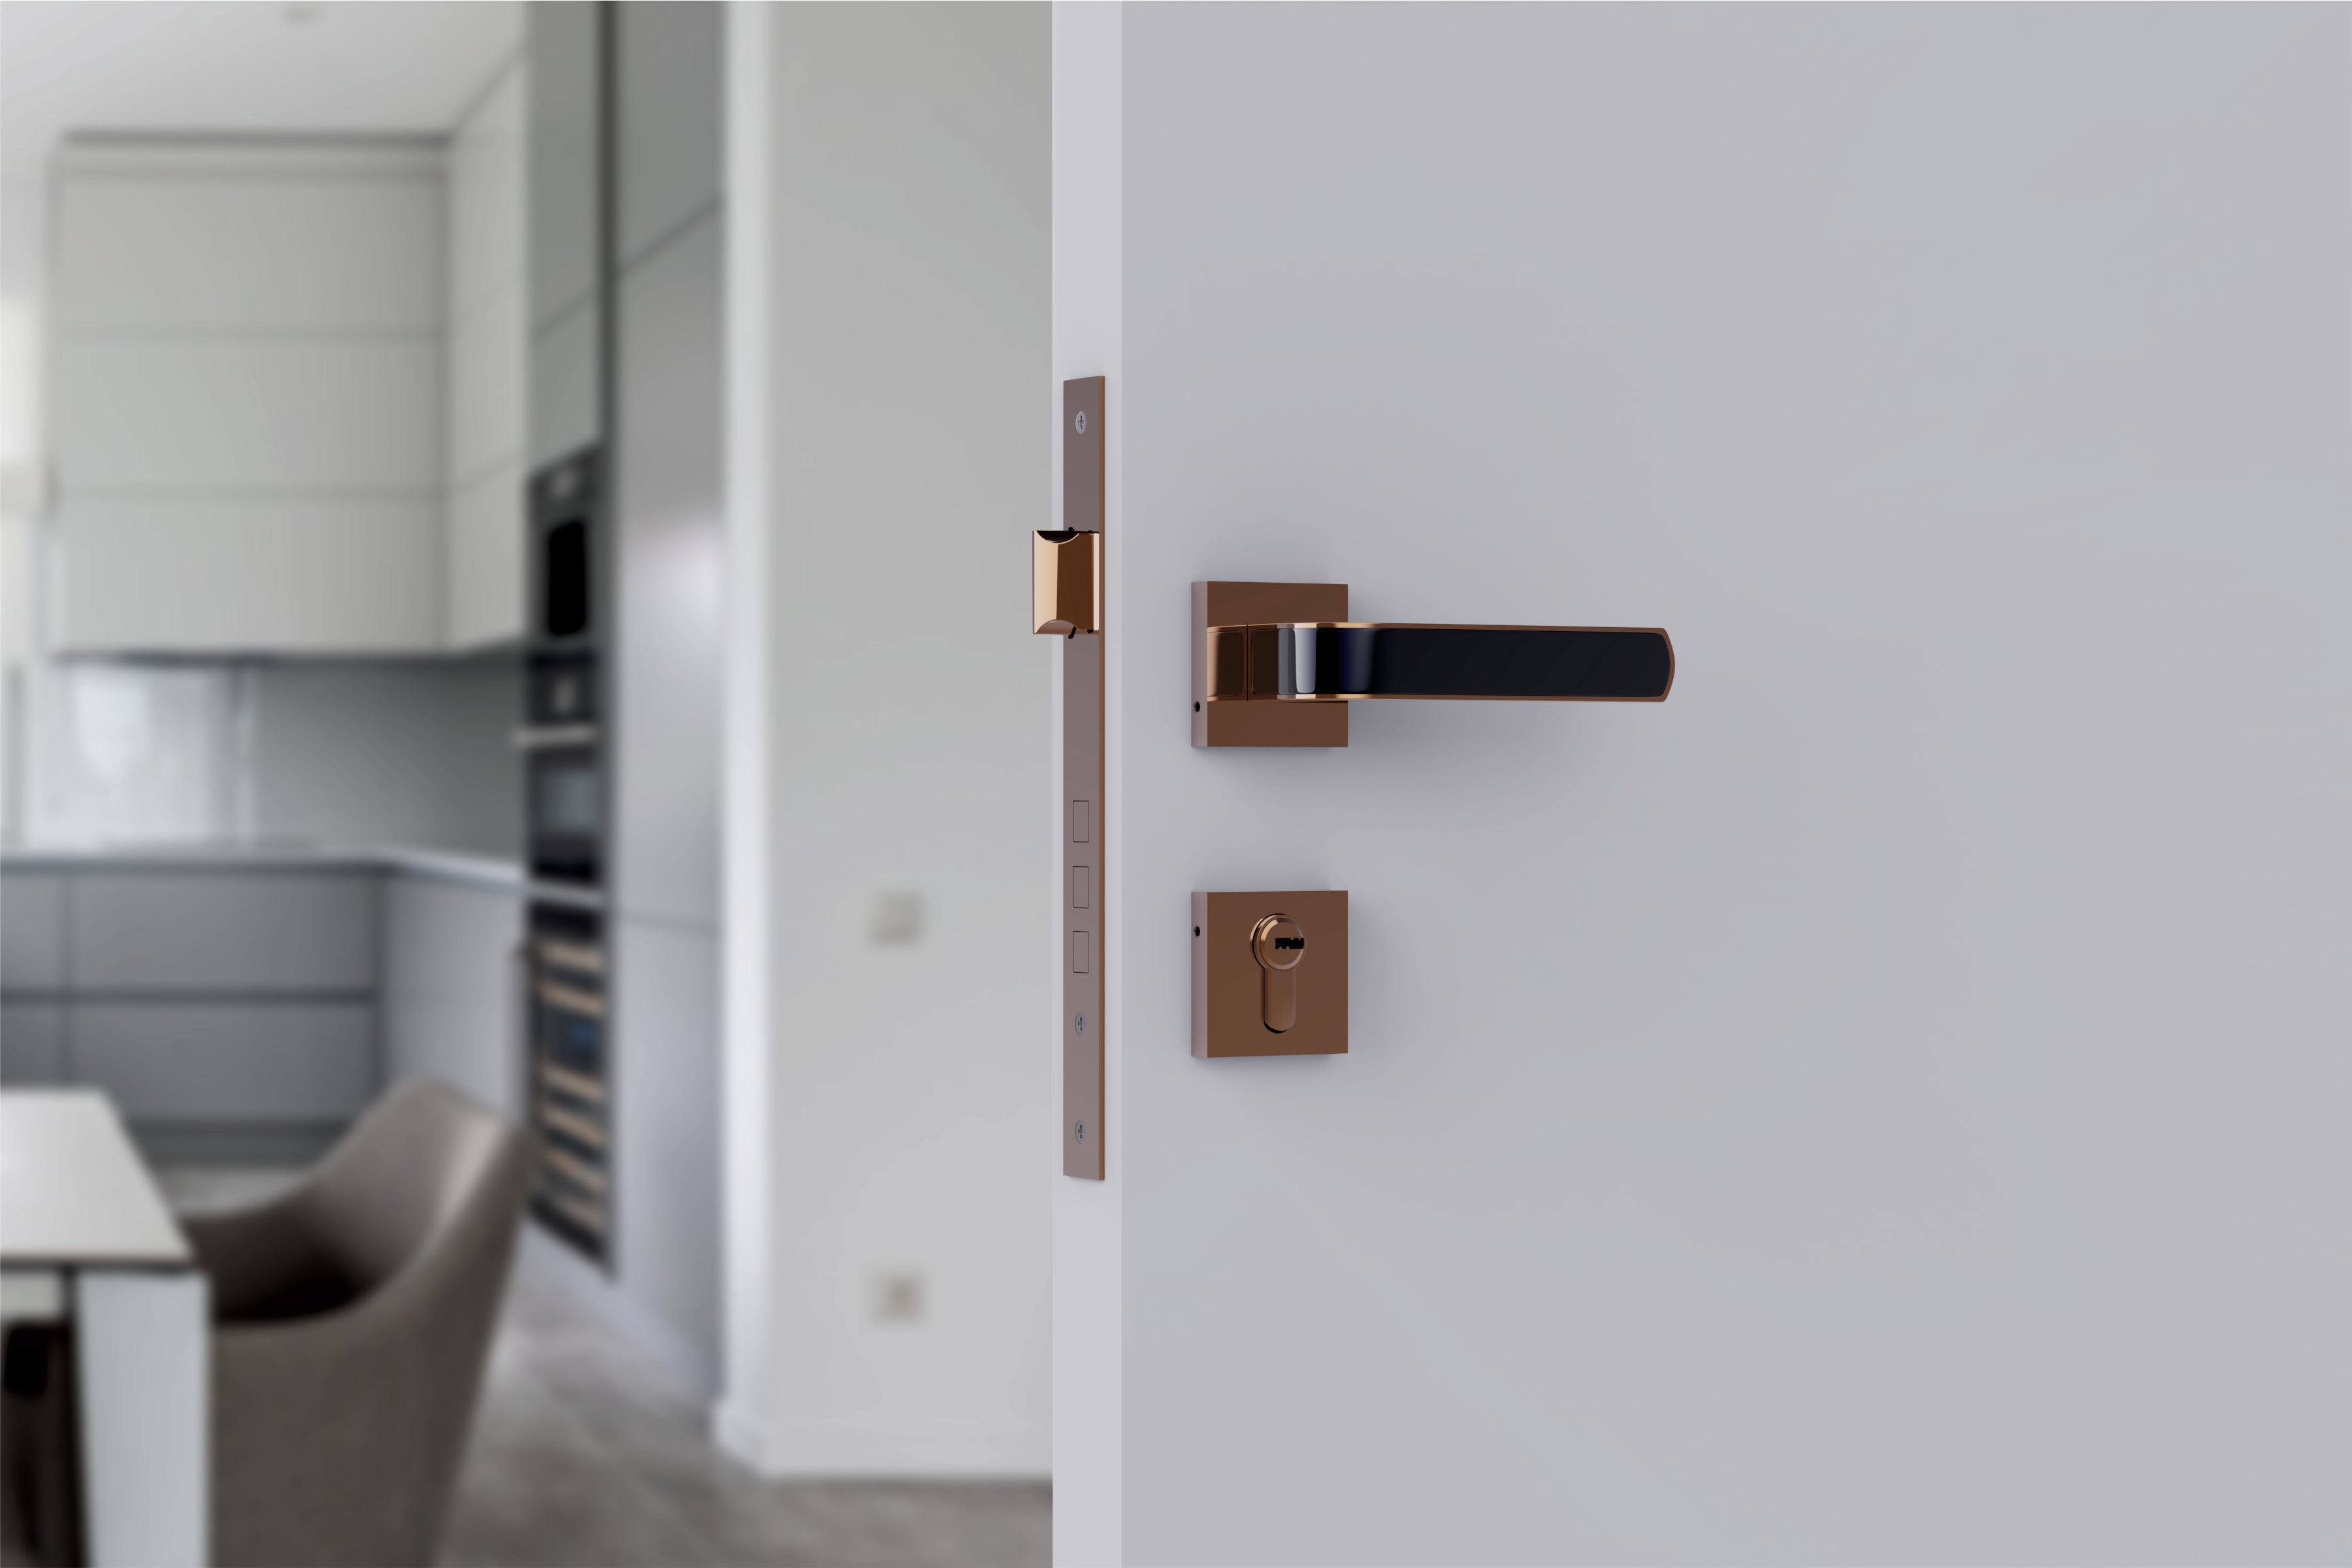 Superior Heavy Duty Mortise Door Locks for Main Door Lock Handles Set Home, Office, Hotel, Bedroom